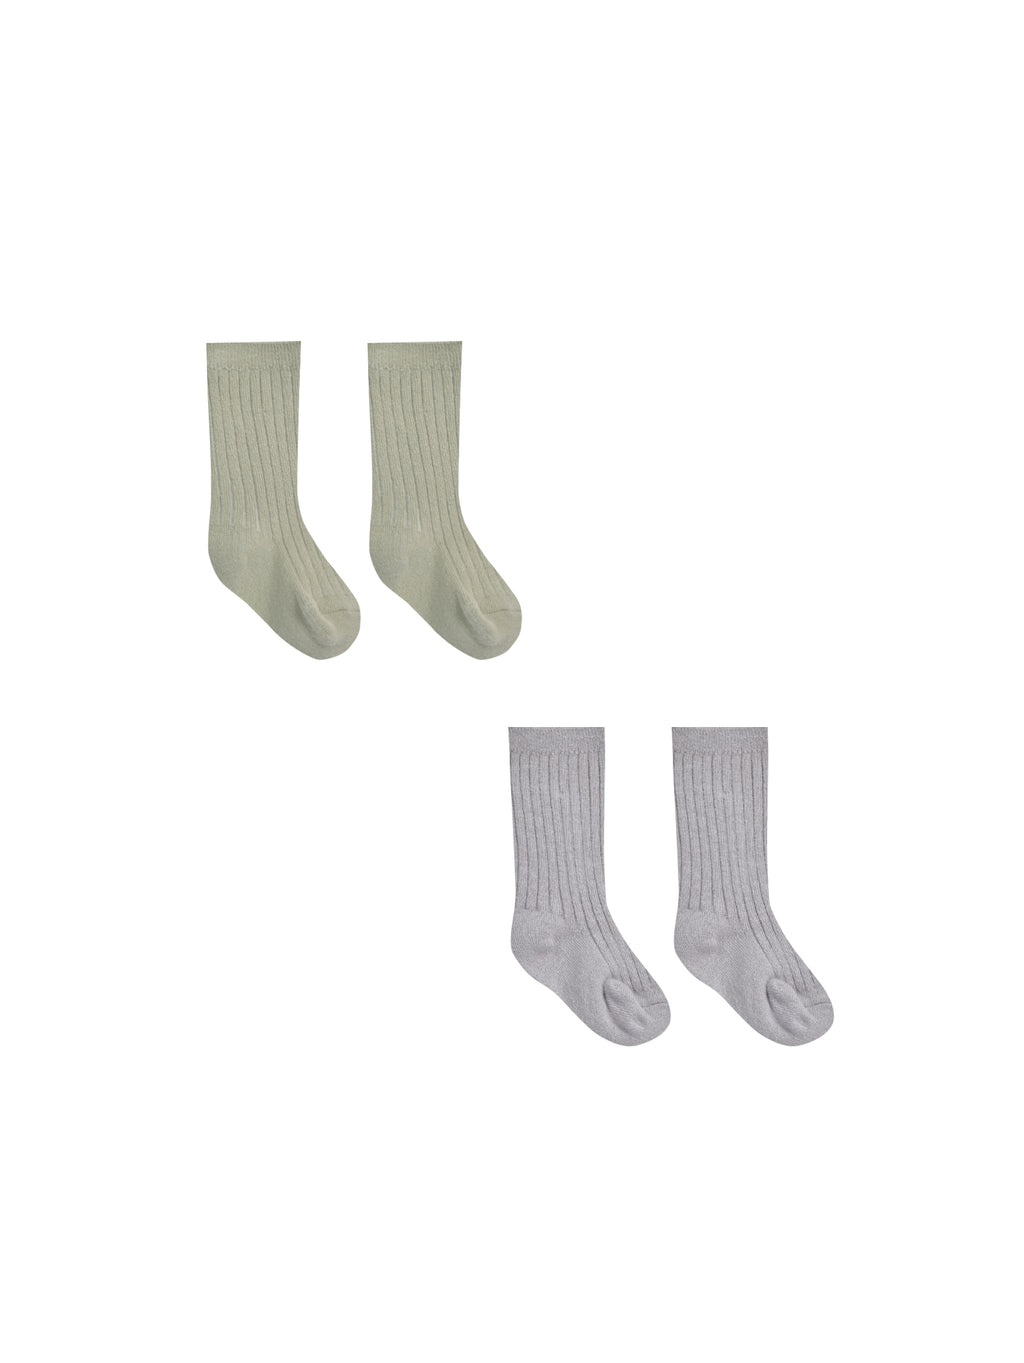 Quincy Mae Socks Set - Sage, Periwinkle